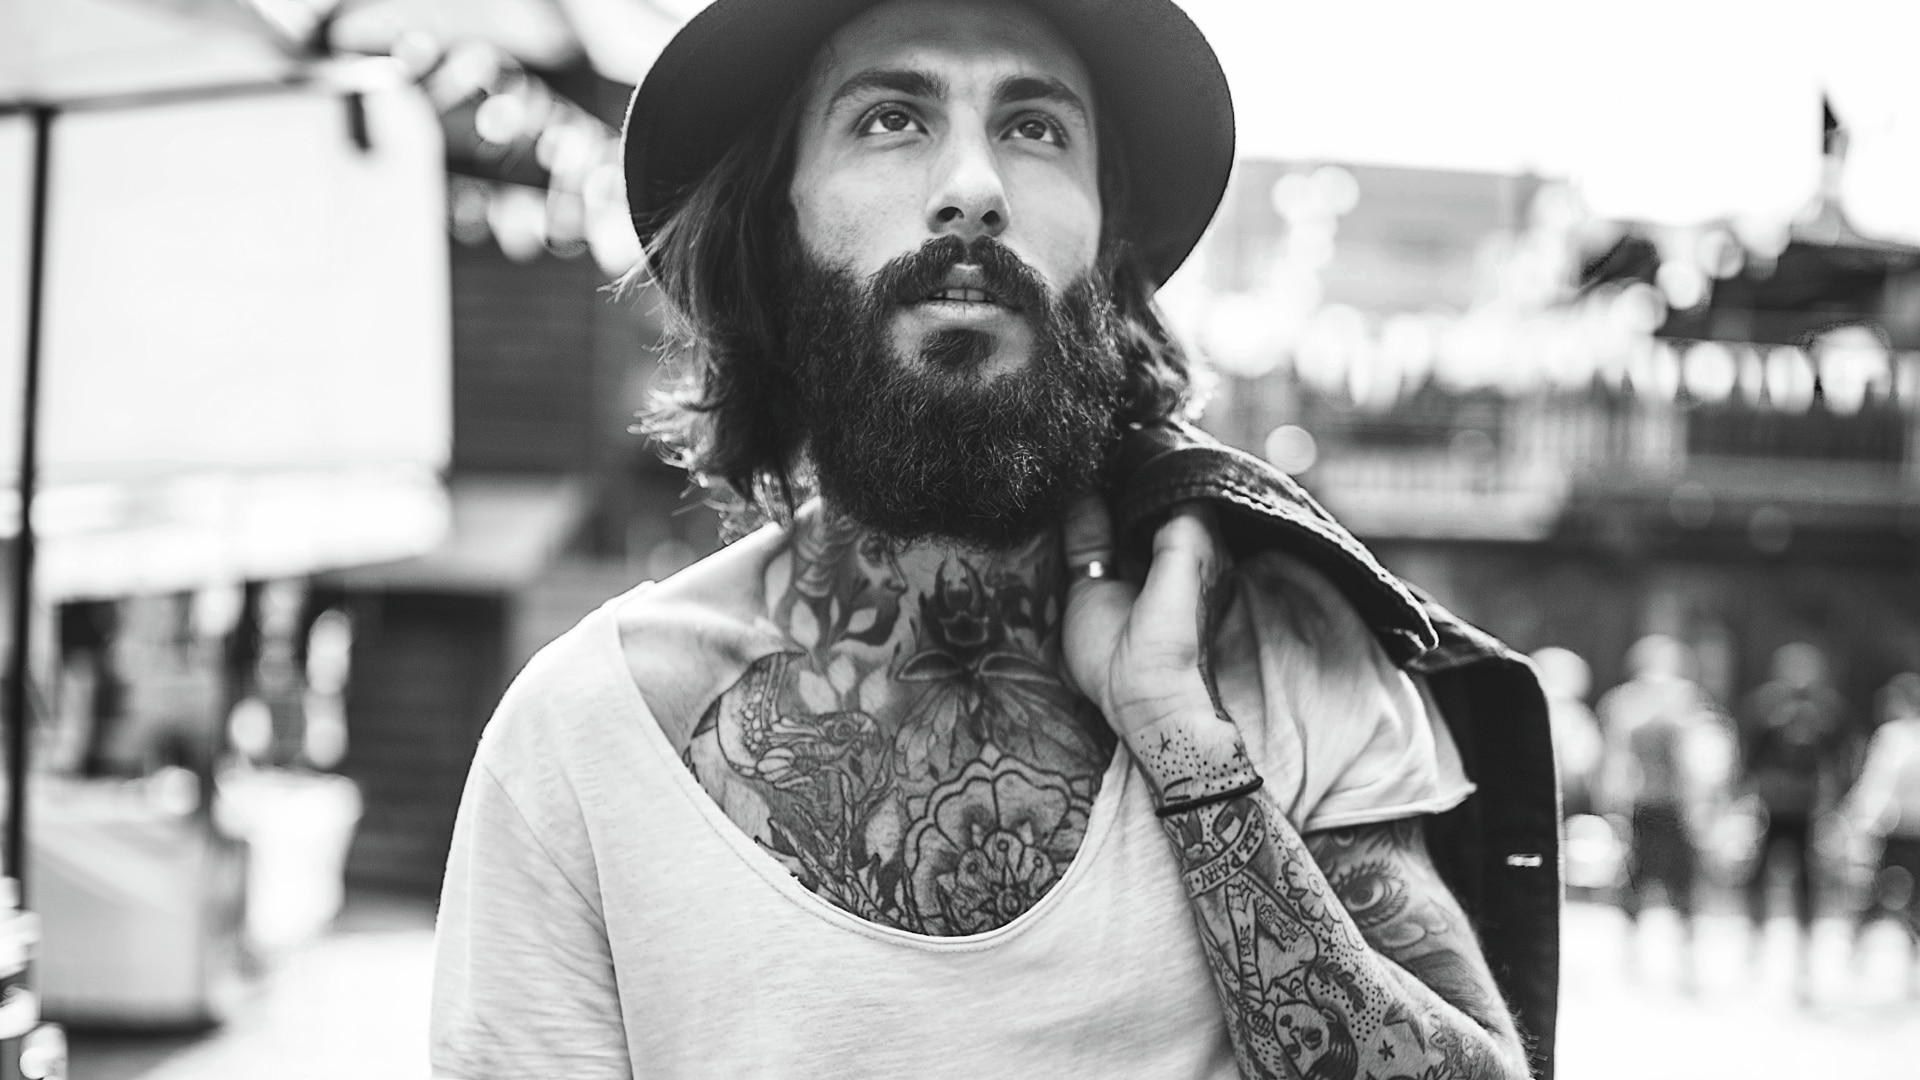 Homme avec une barbe et des tatouages.